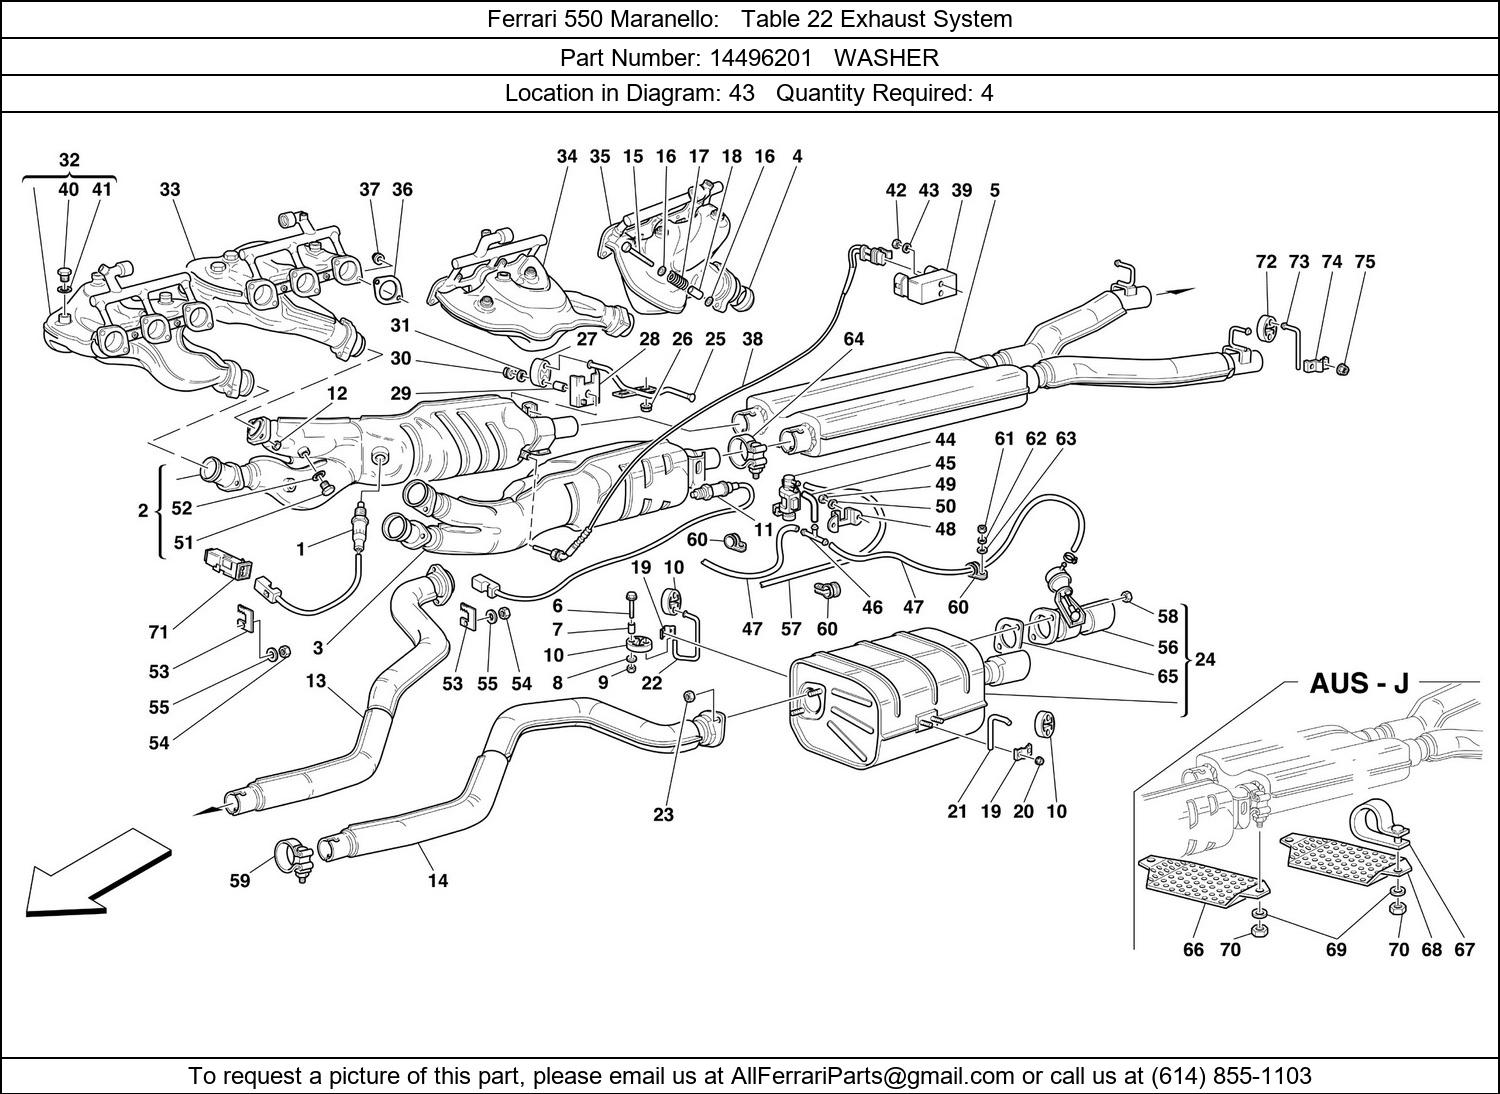 Ferrari Part 14496201